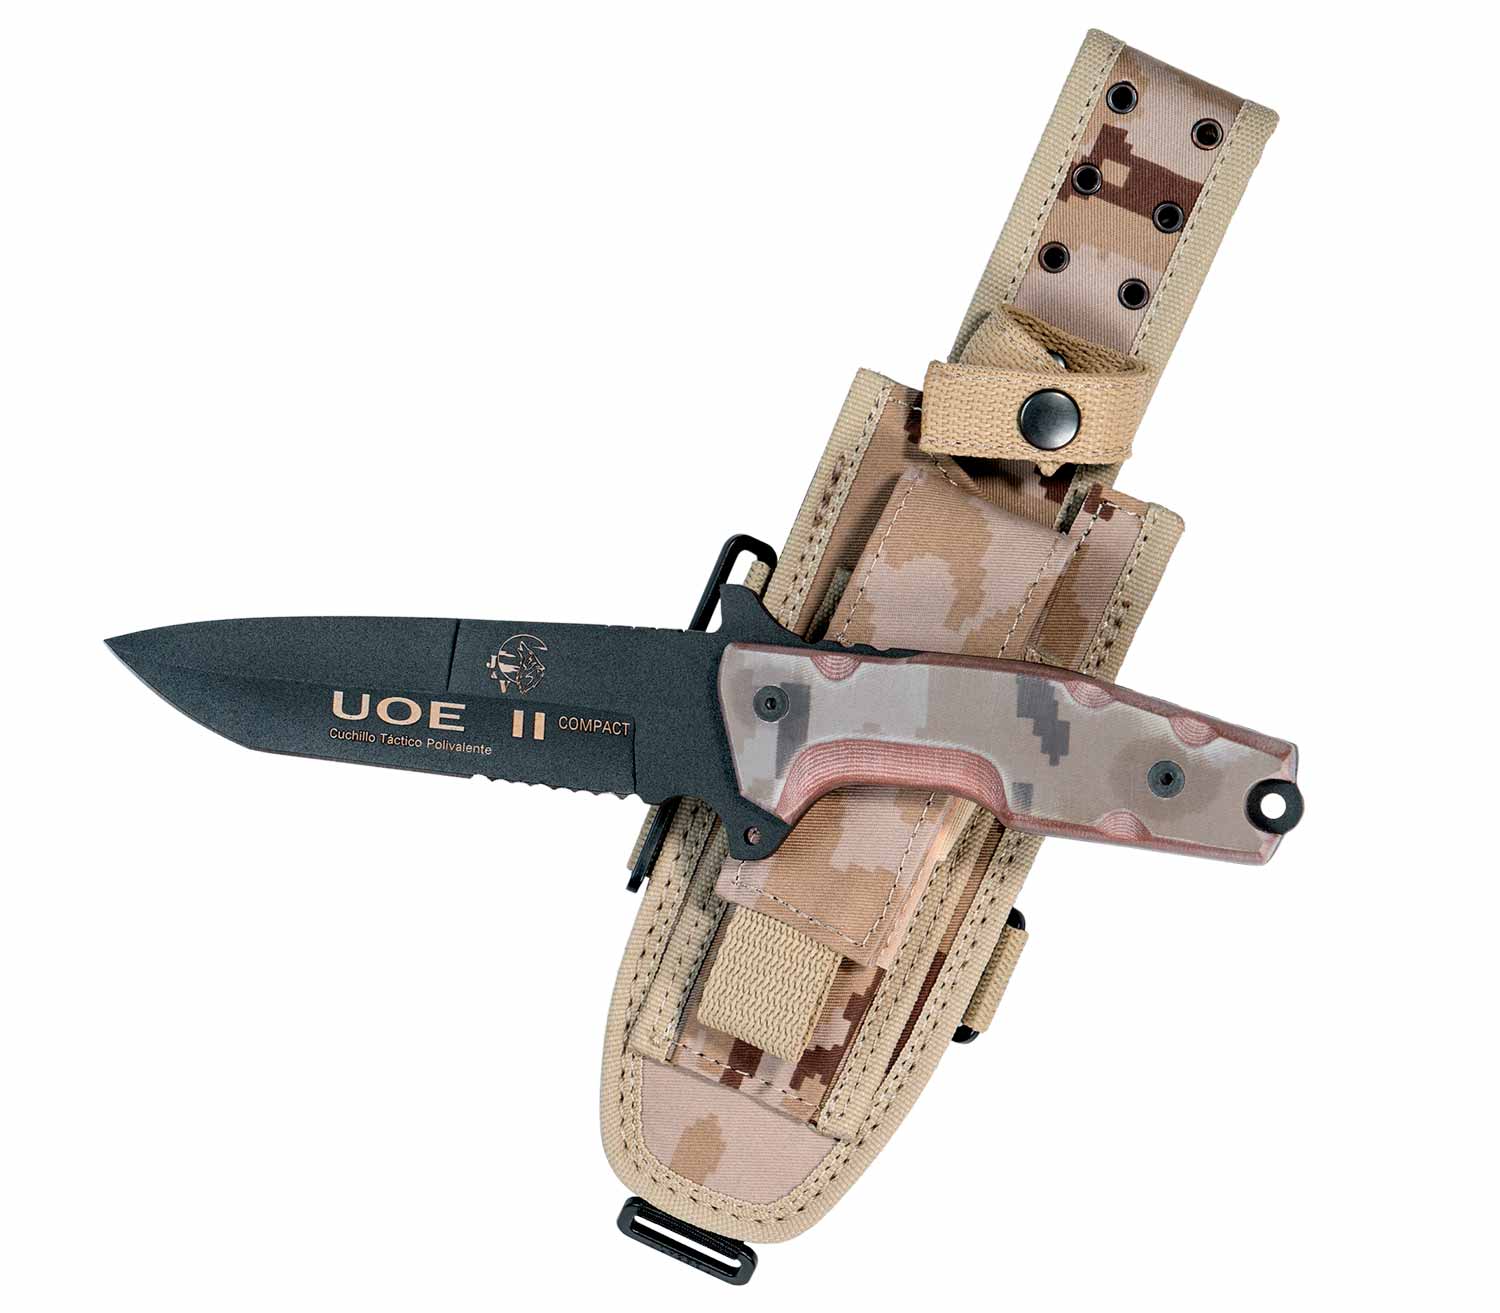 Cuchillo J&V UOE II Compact Pavonado completo